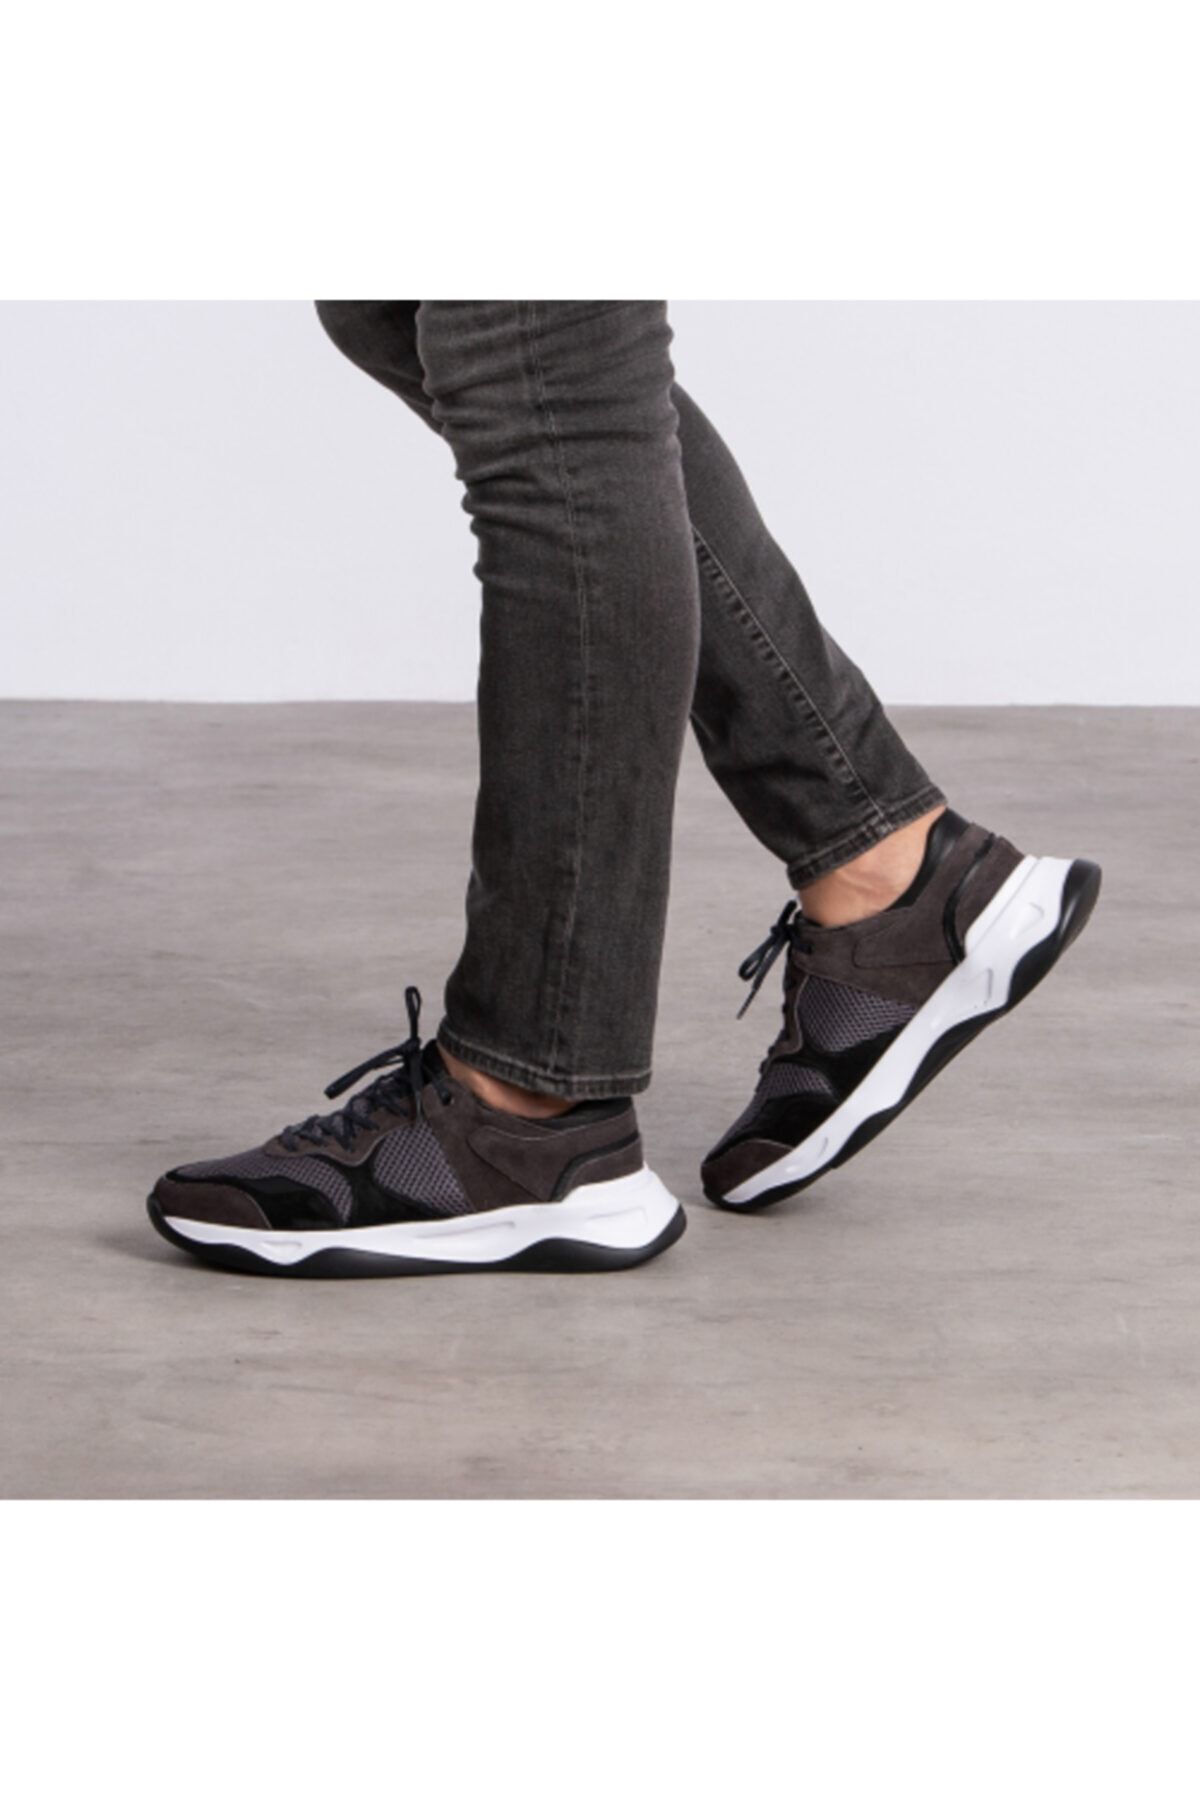 GEGARO G055 Gri Siyah File Detaylı Siyah Beyaz Eva Taban Hakiki Süet Deri Erkek Sneakers